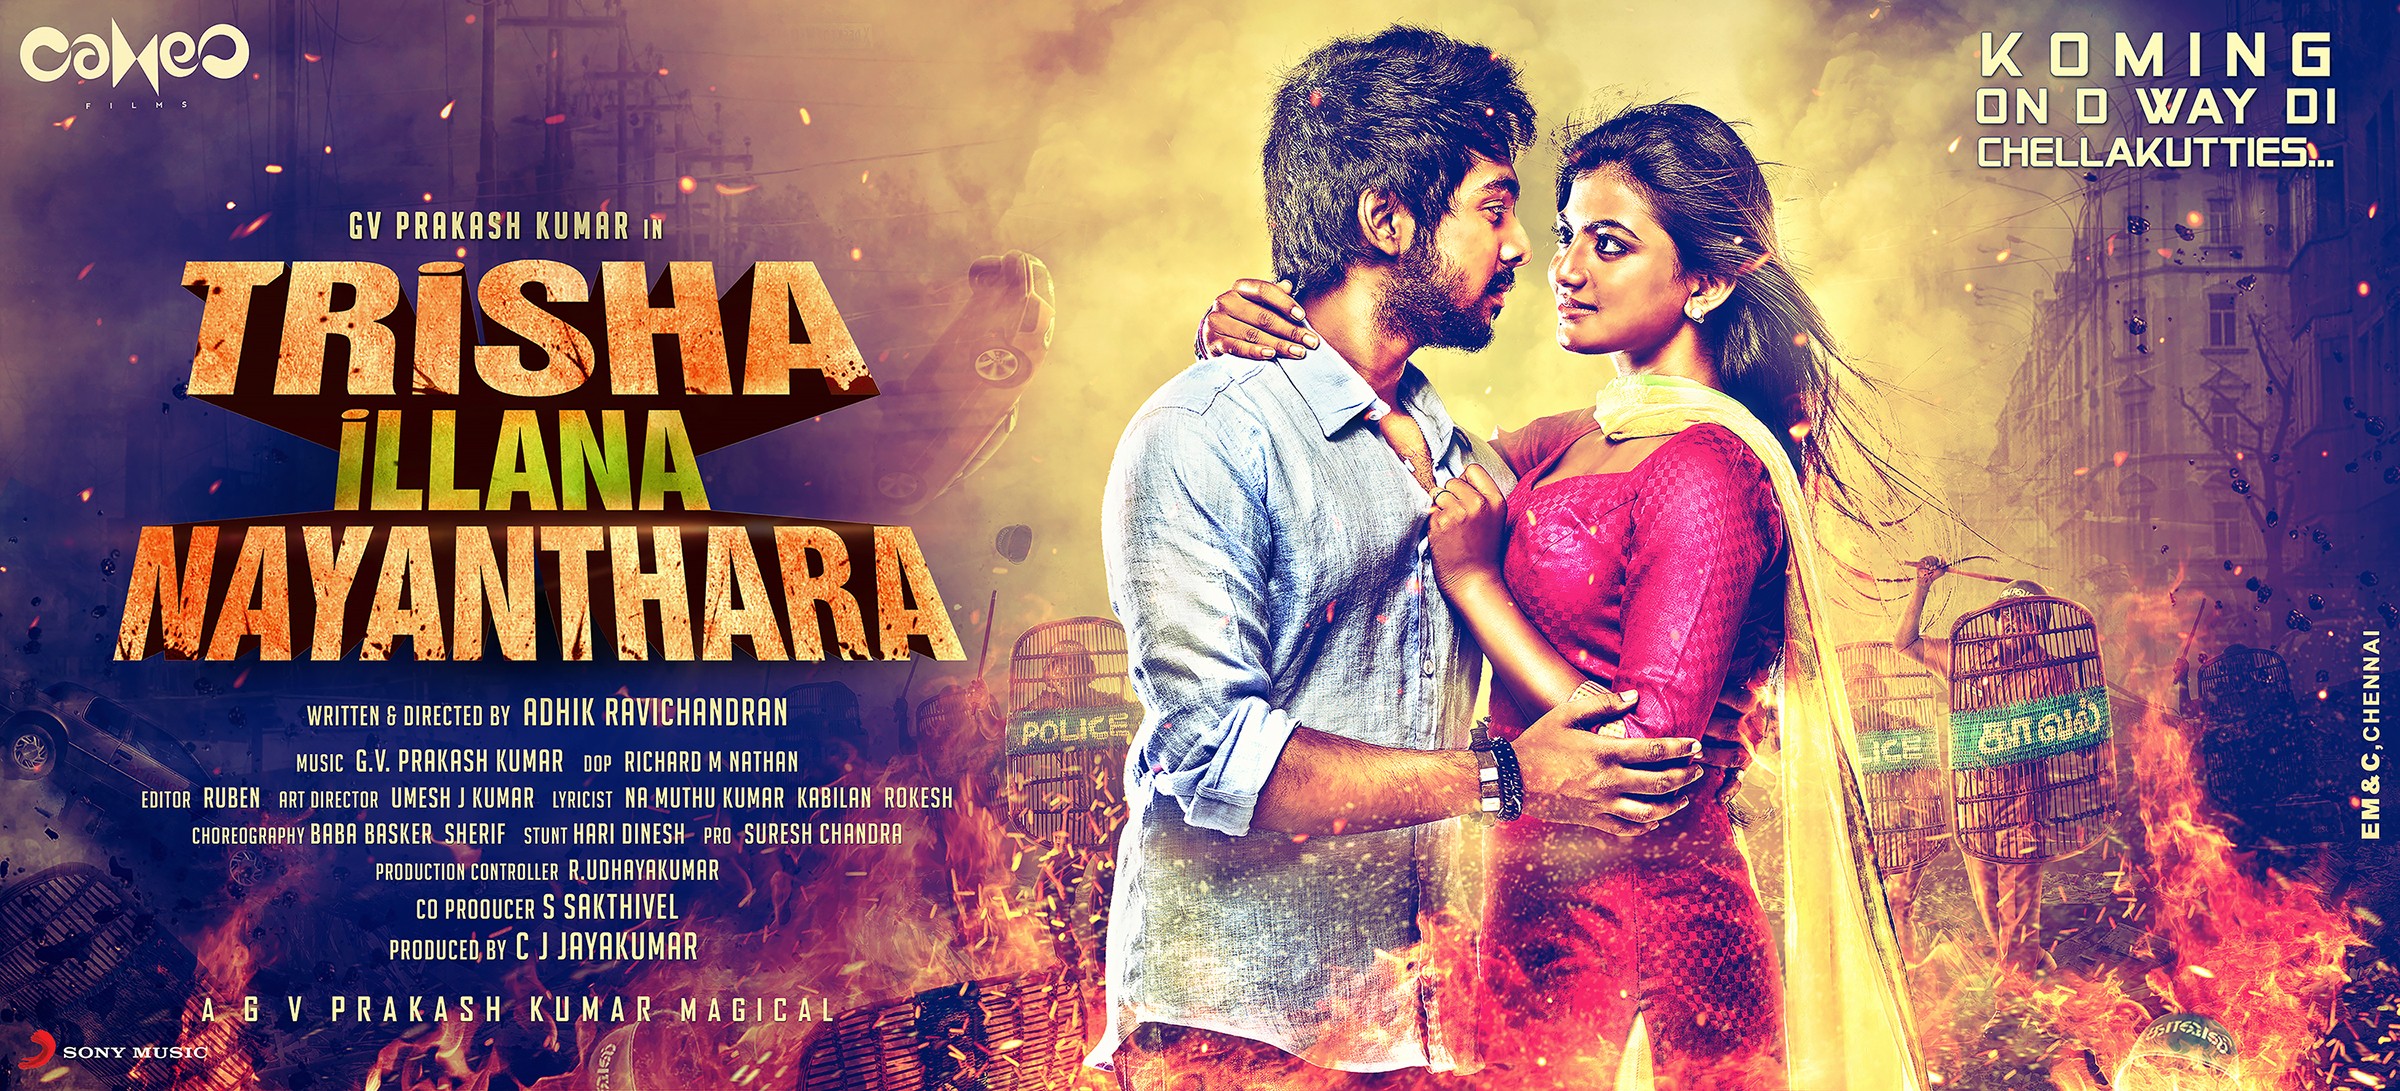 Mega Sized Movie Poster Image for Trisha Illana Nayanthara (#2 of 4)